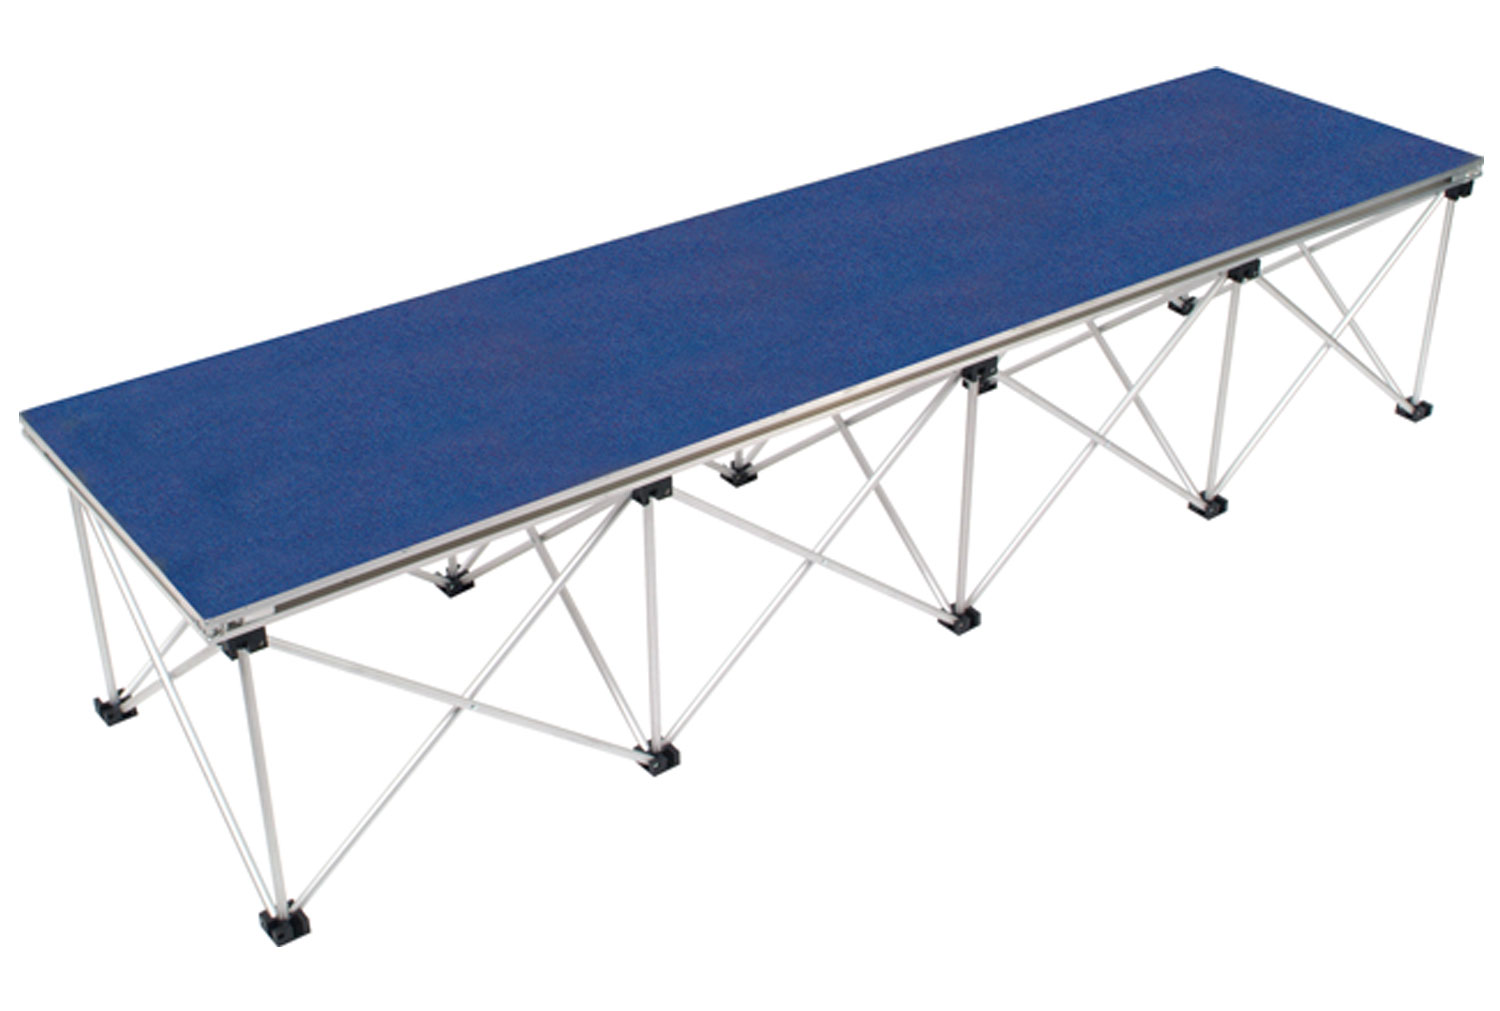 Gopak Ultralight Rectangular Stage Deck & Riser, 200wx52d (cm), Sapphire Blue Carpet